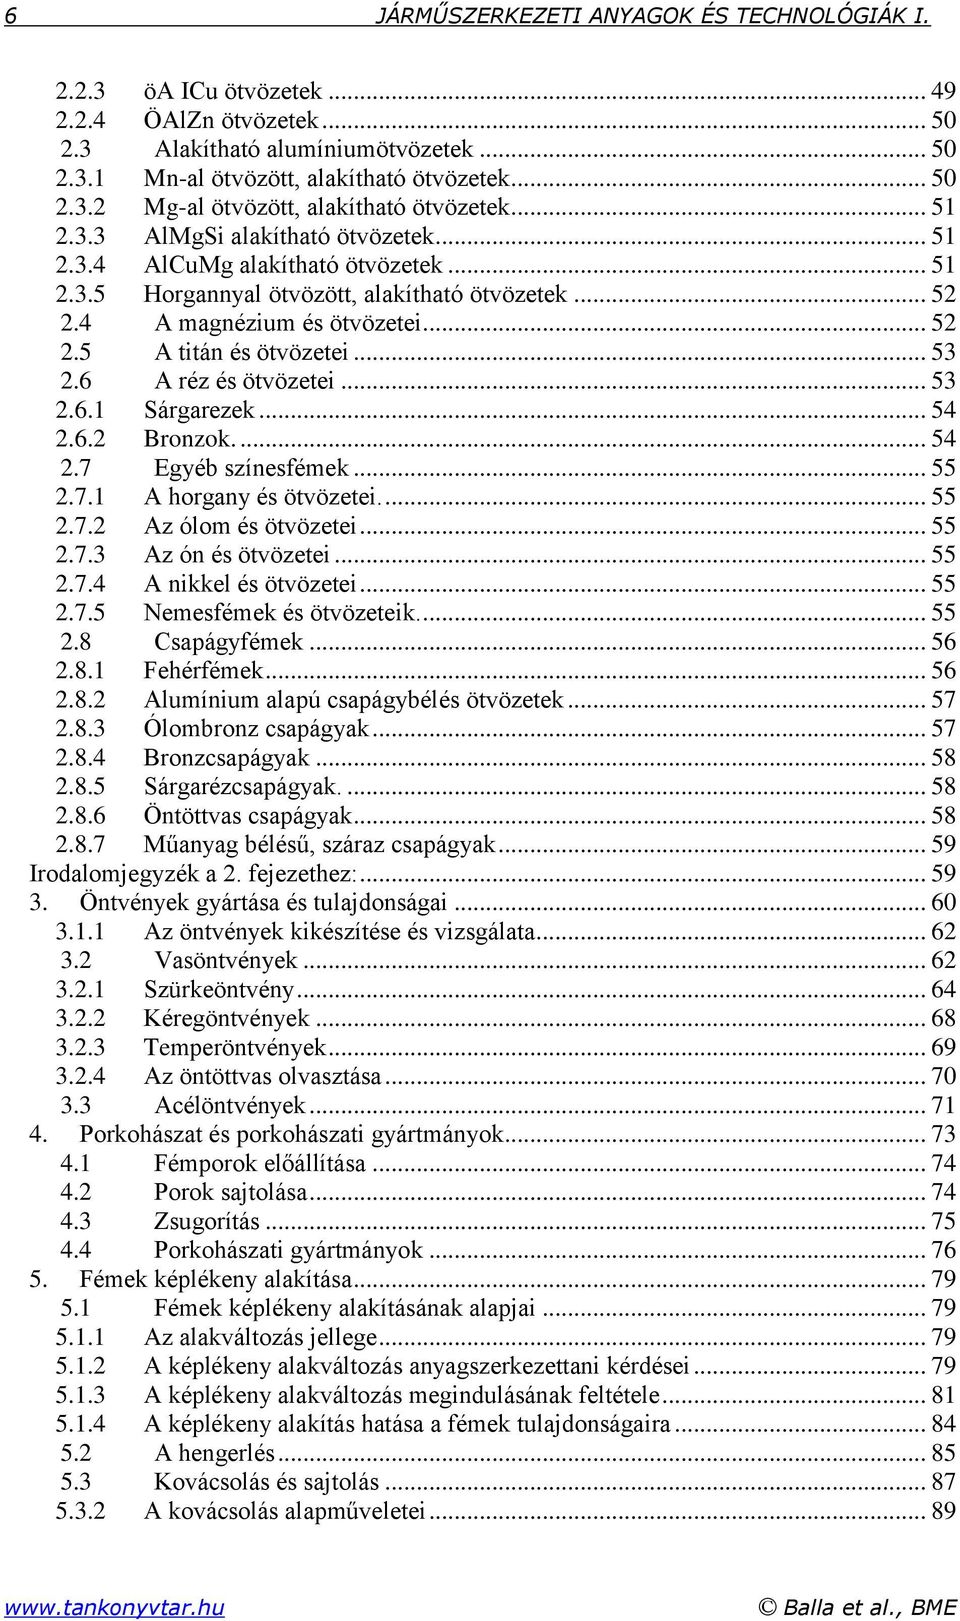 Járműszerkezeti Anyagok és Technológiák I. - PDF Ingyenes letöltés